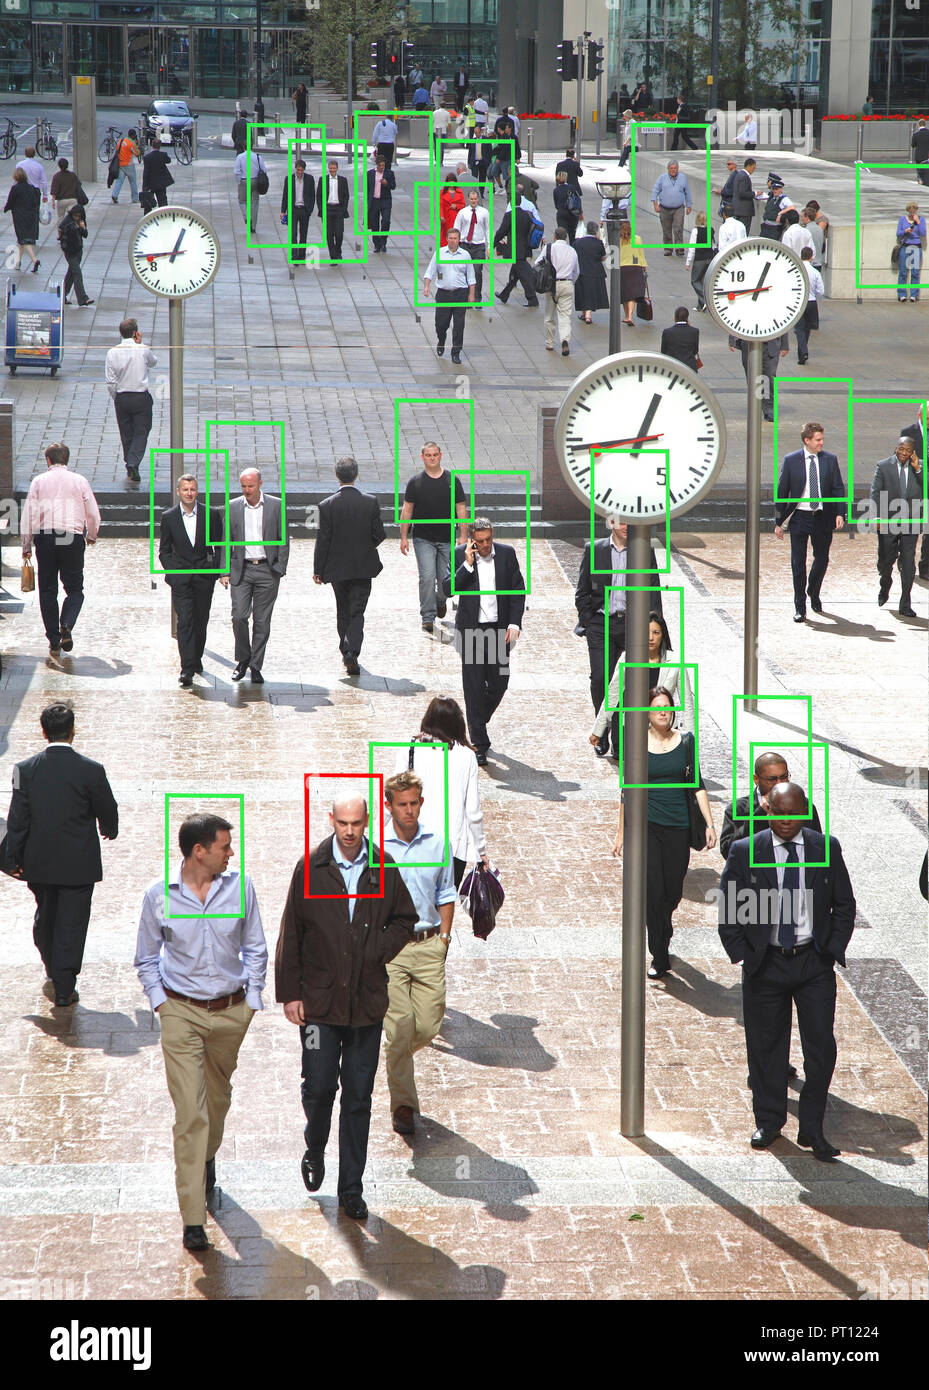 Une photo de travailleurs à Canary Wharf, London avec Visages en relief dans le style d'une caméra de surveillance à l'aide de reconnaissance des visages. Un visage choisi. Banque D'Images